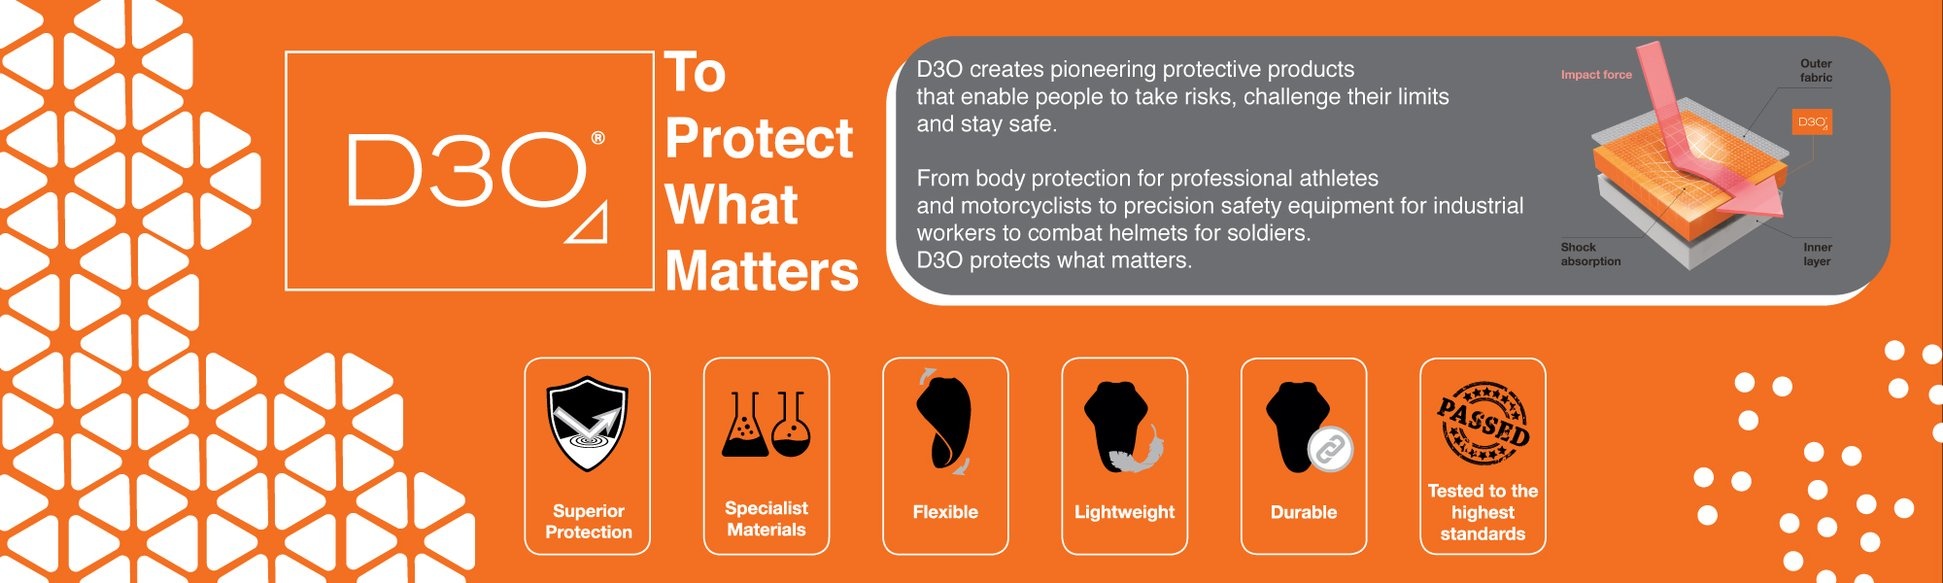 Mehr über D3O-Schutz